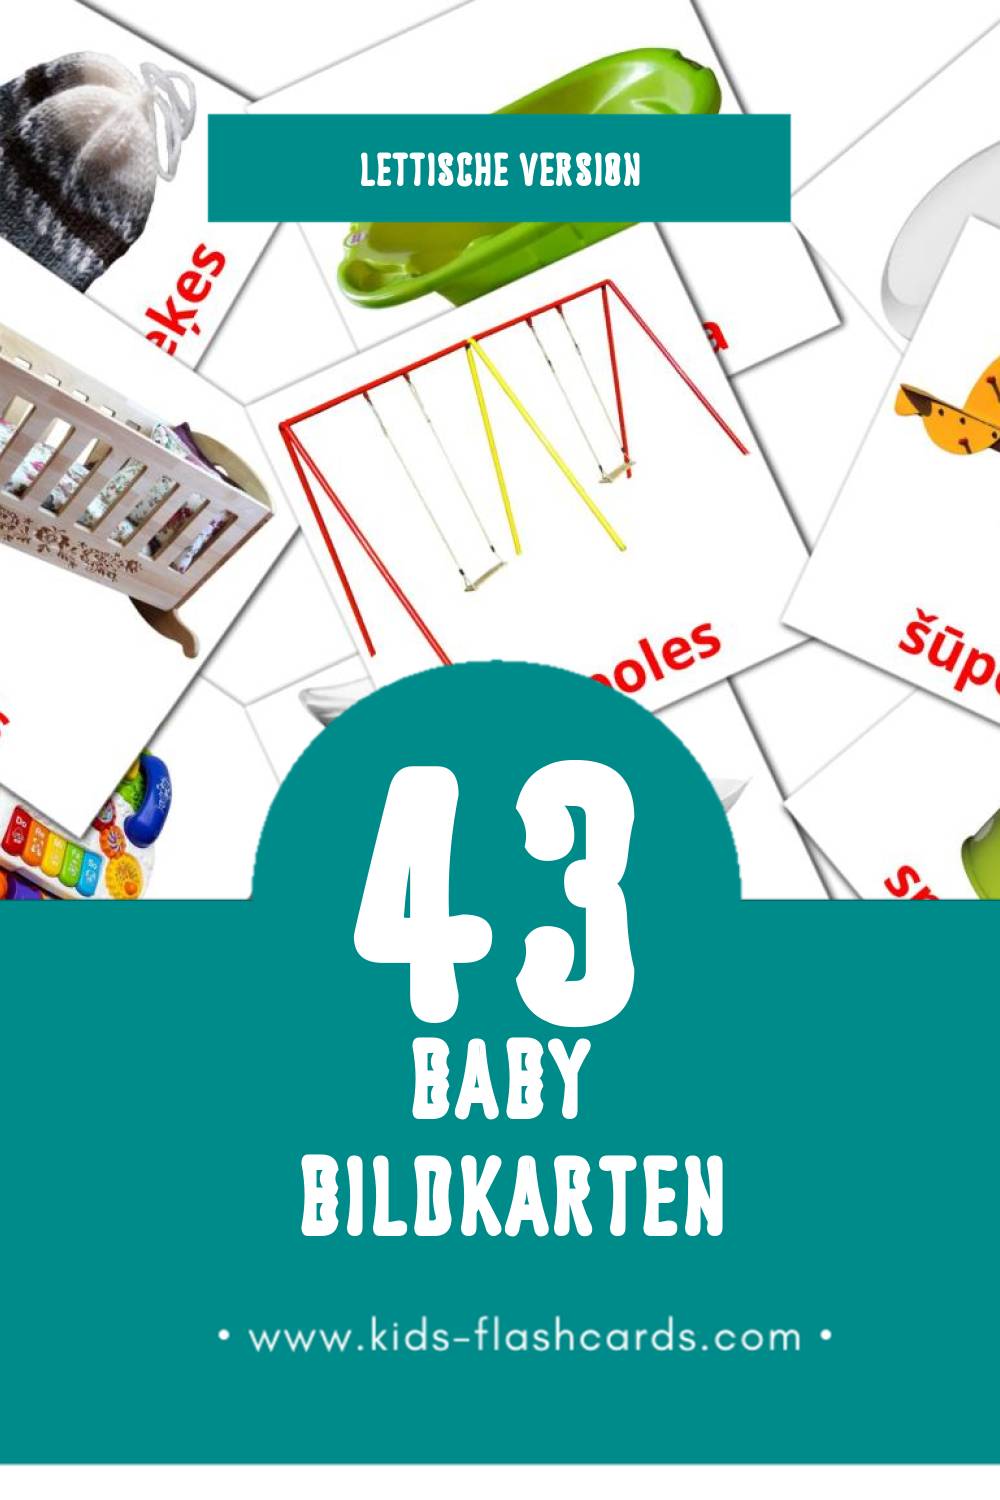 Visual Mazulis Flashcards für Kleinkinder (43 Karten in Lettisch)